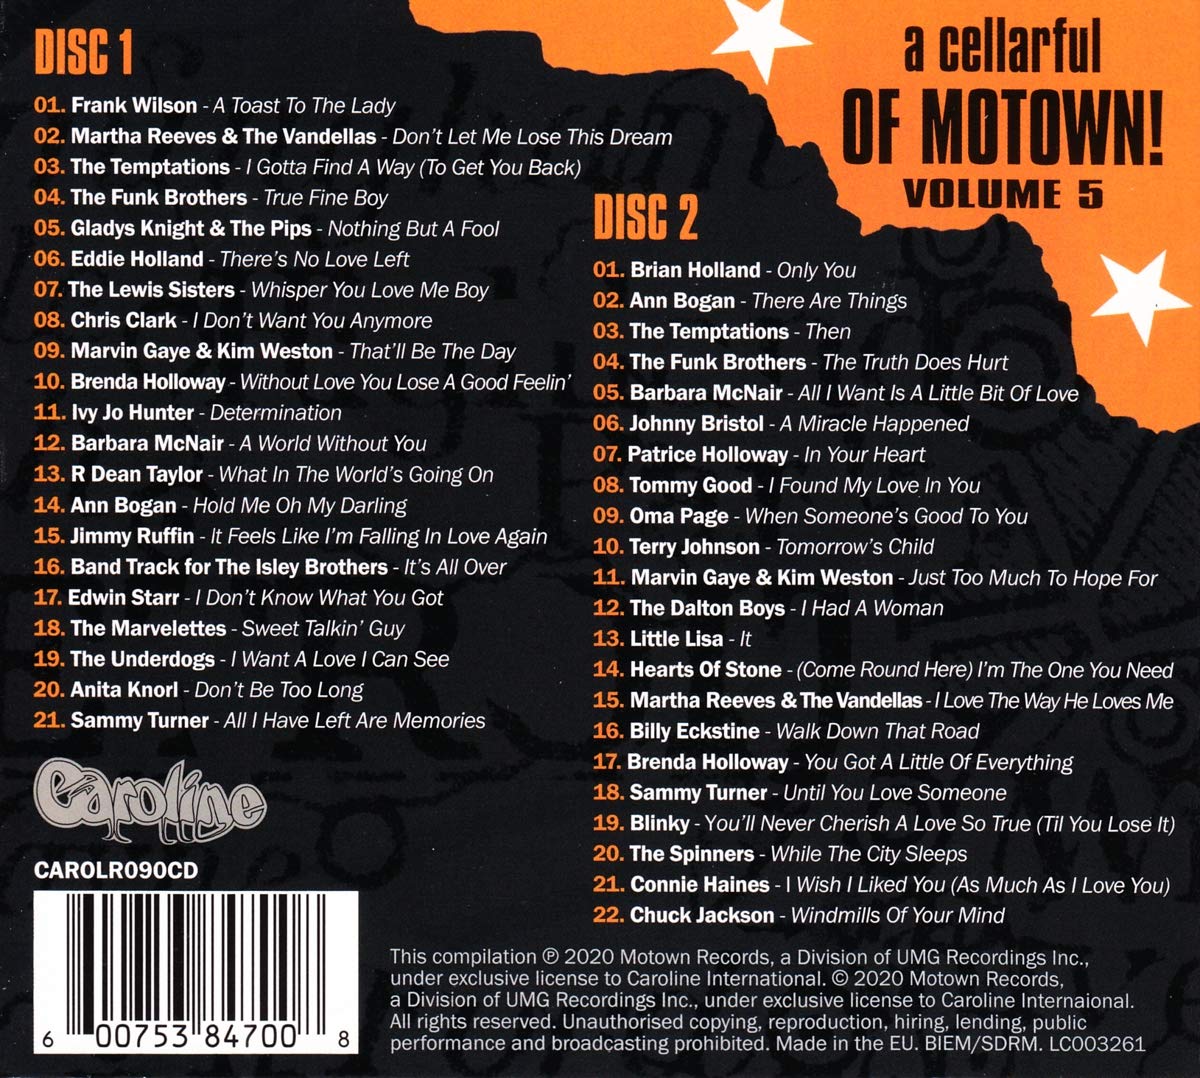 모타운 레코드 희귀 음원 모음집 (A Cellarful Of Motown Vol.5)